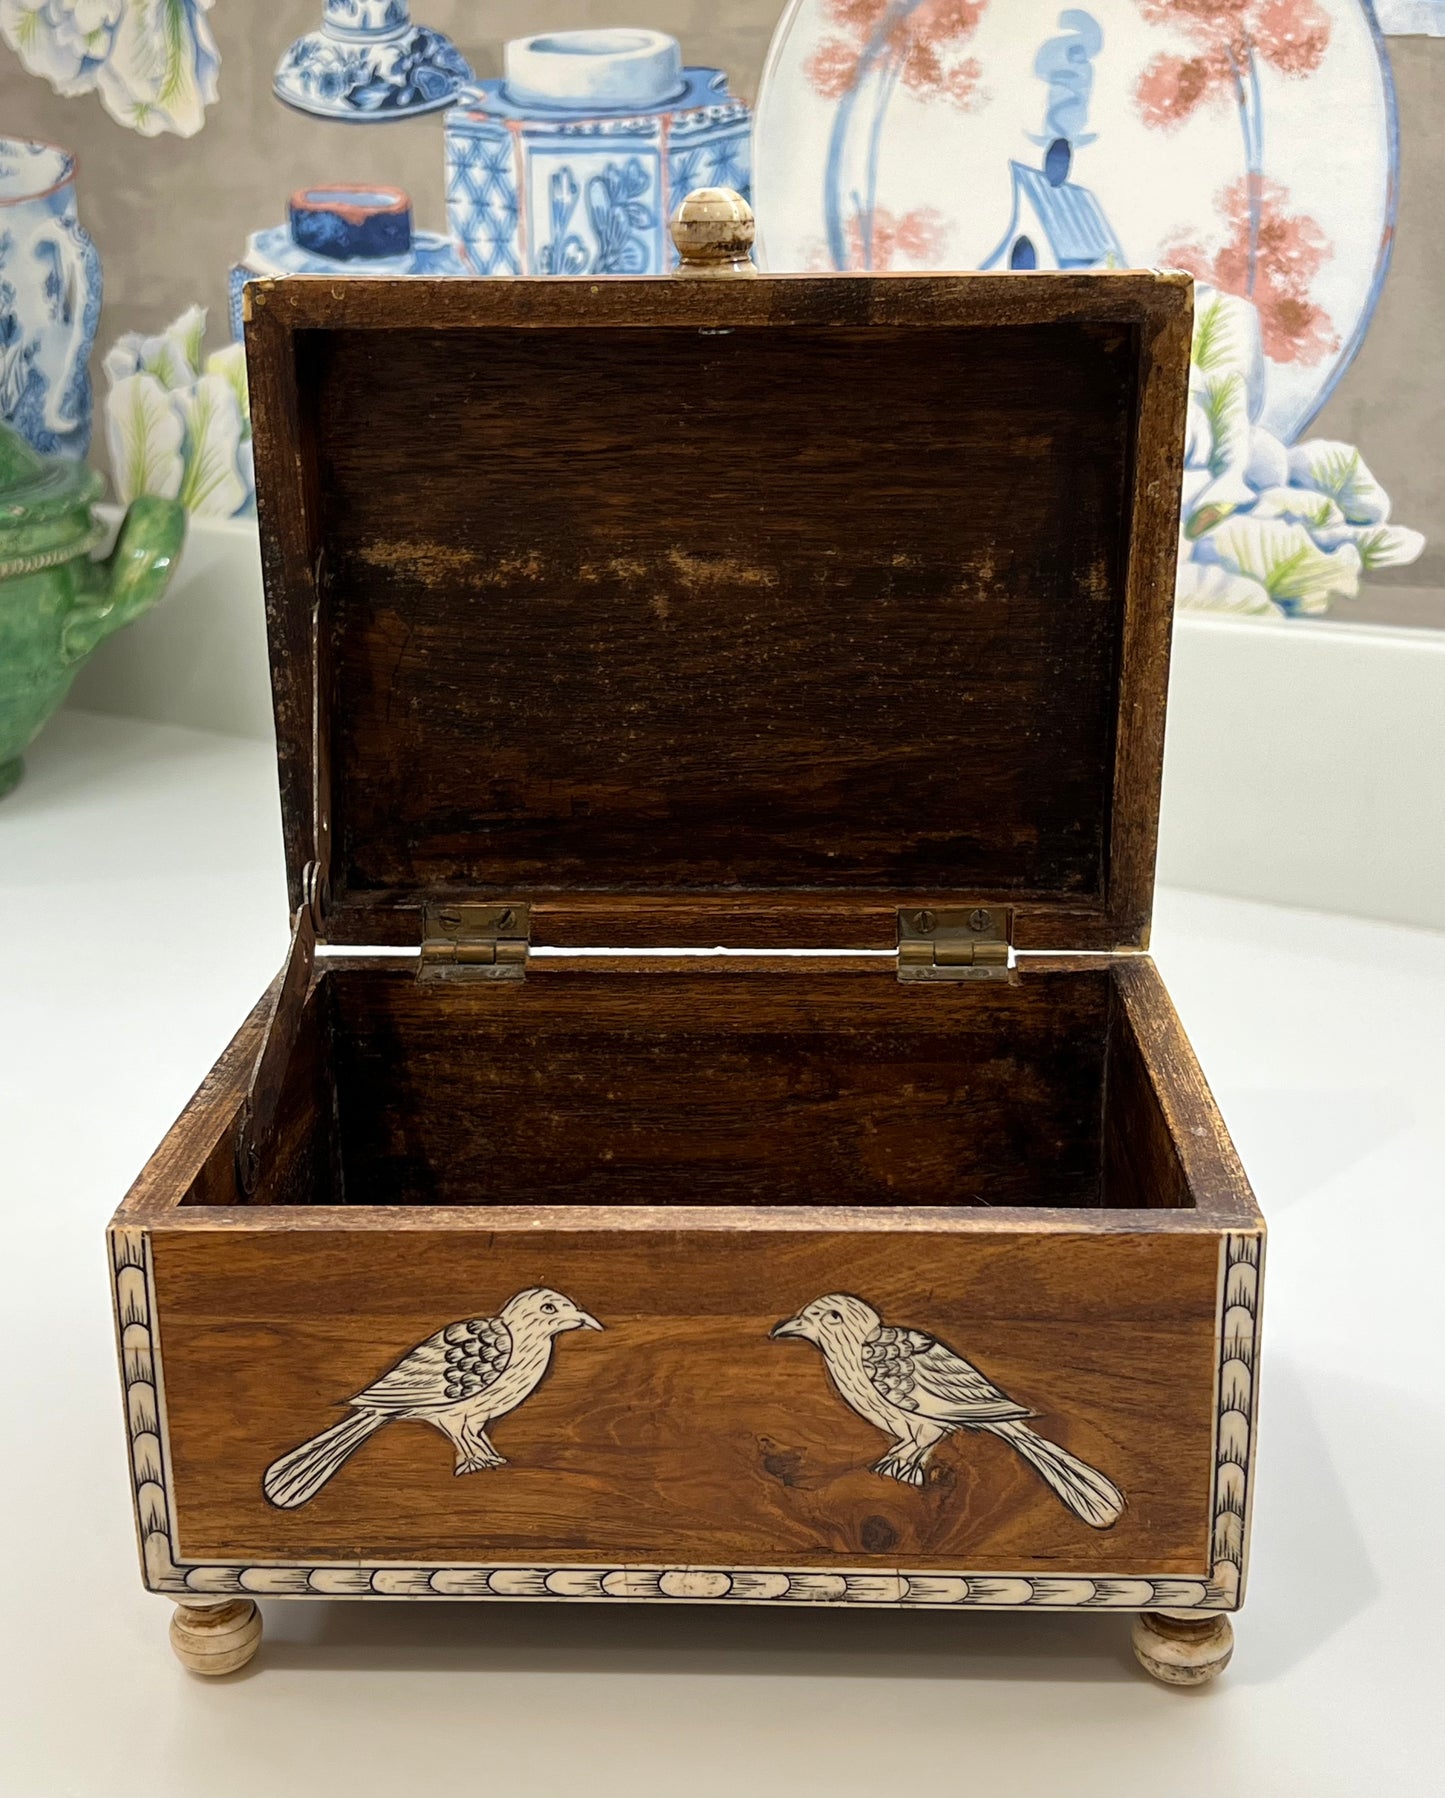 Bone Inlaid Bird Design on Wooden Box